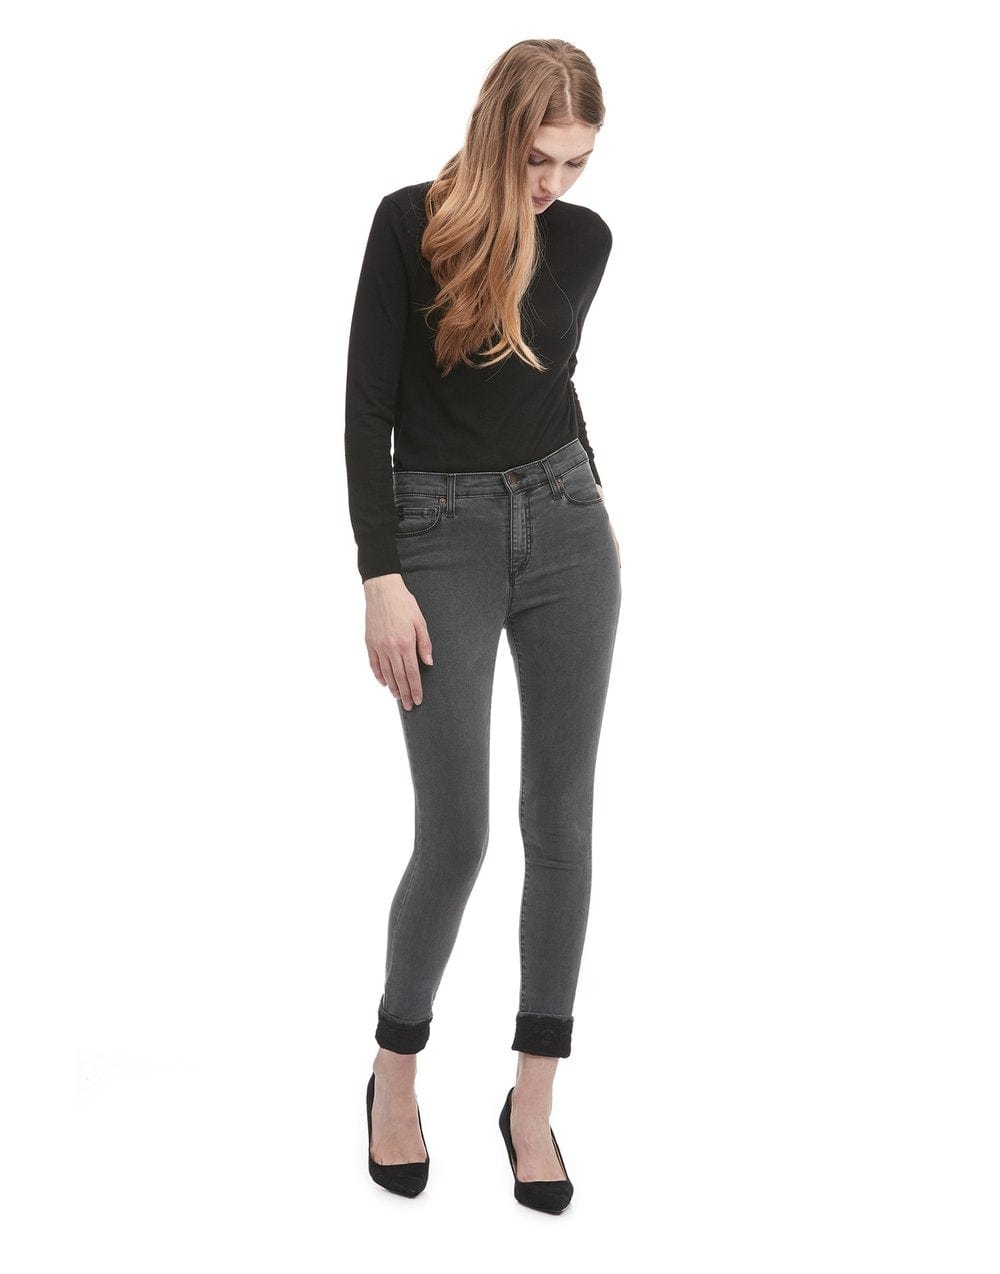 Yoga Jeans Rachel - Jean skinny taille classique * Dernière chance